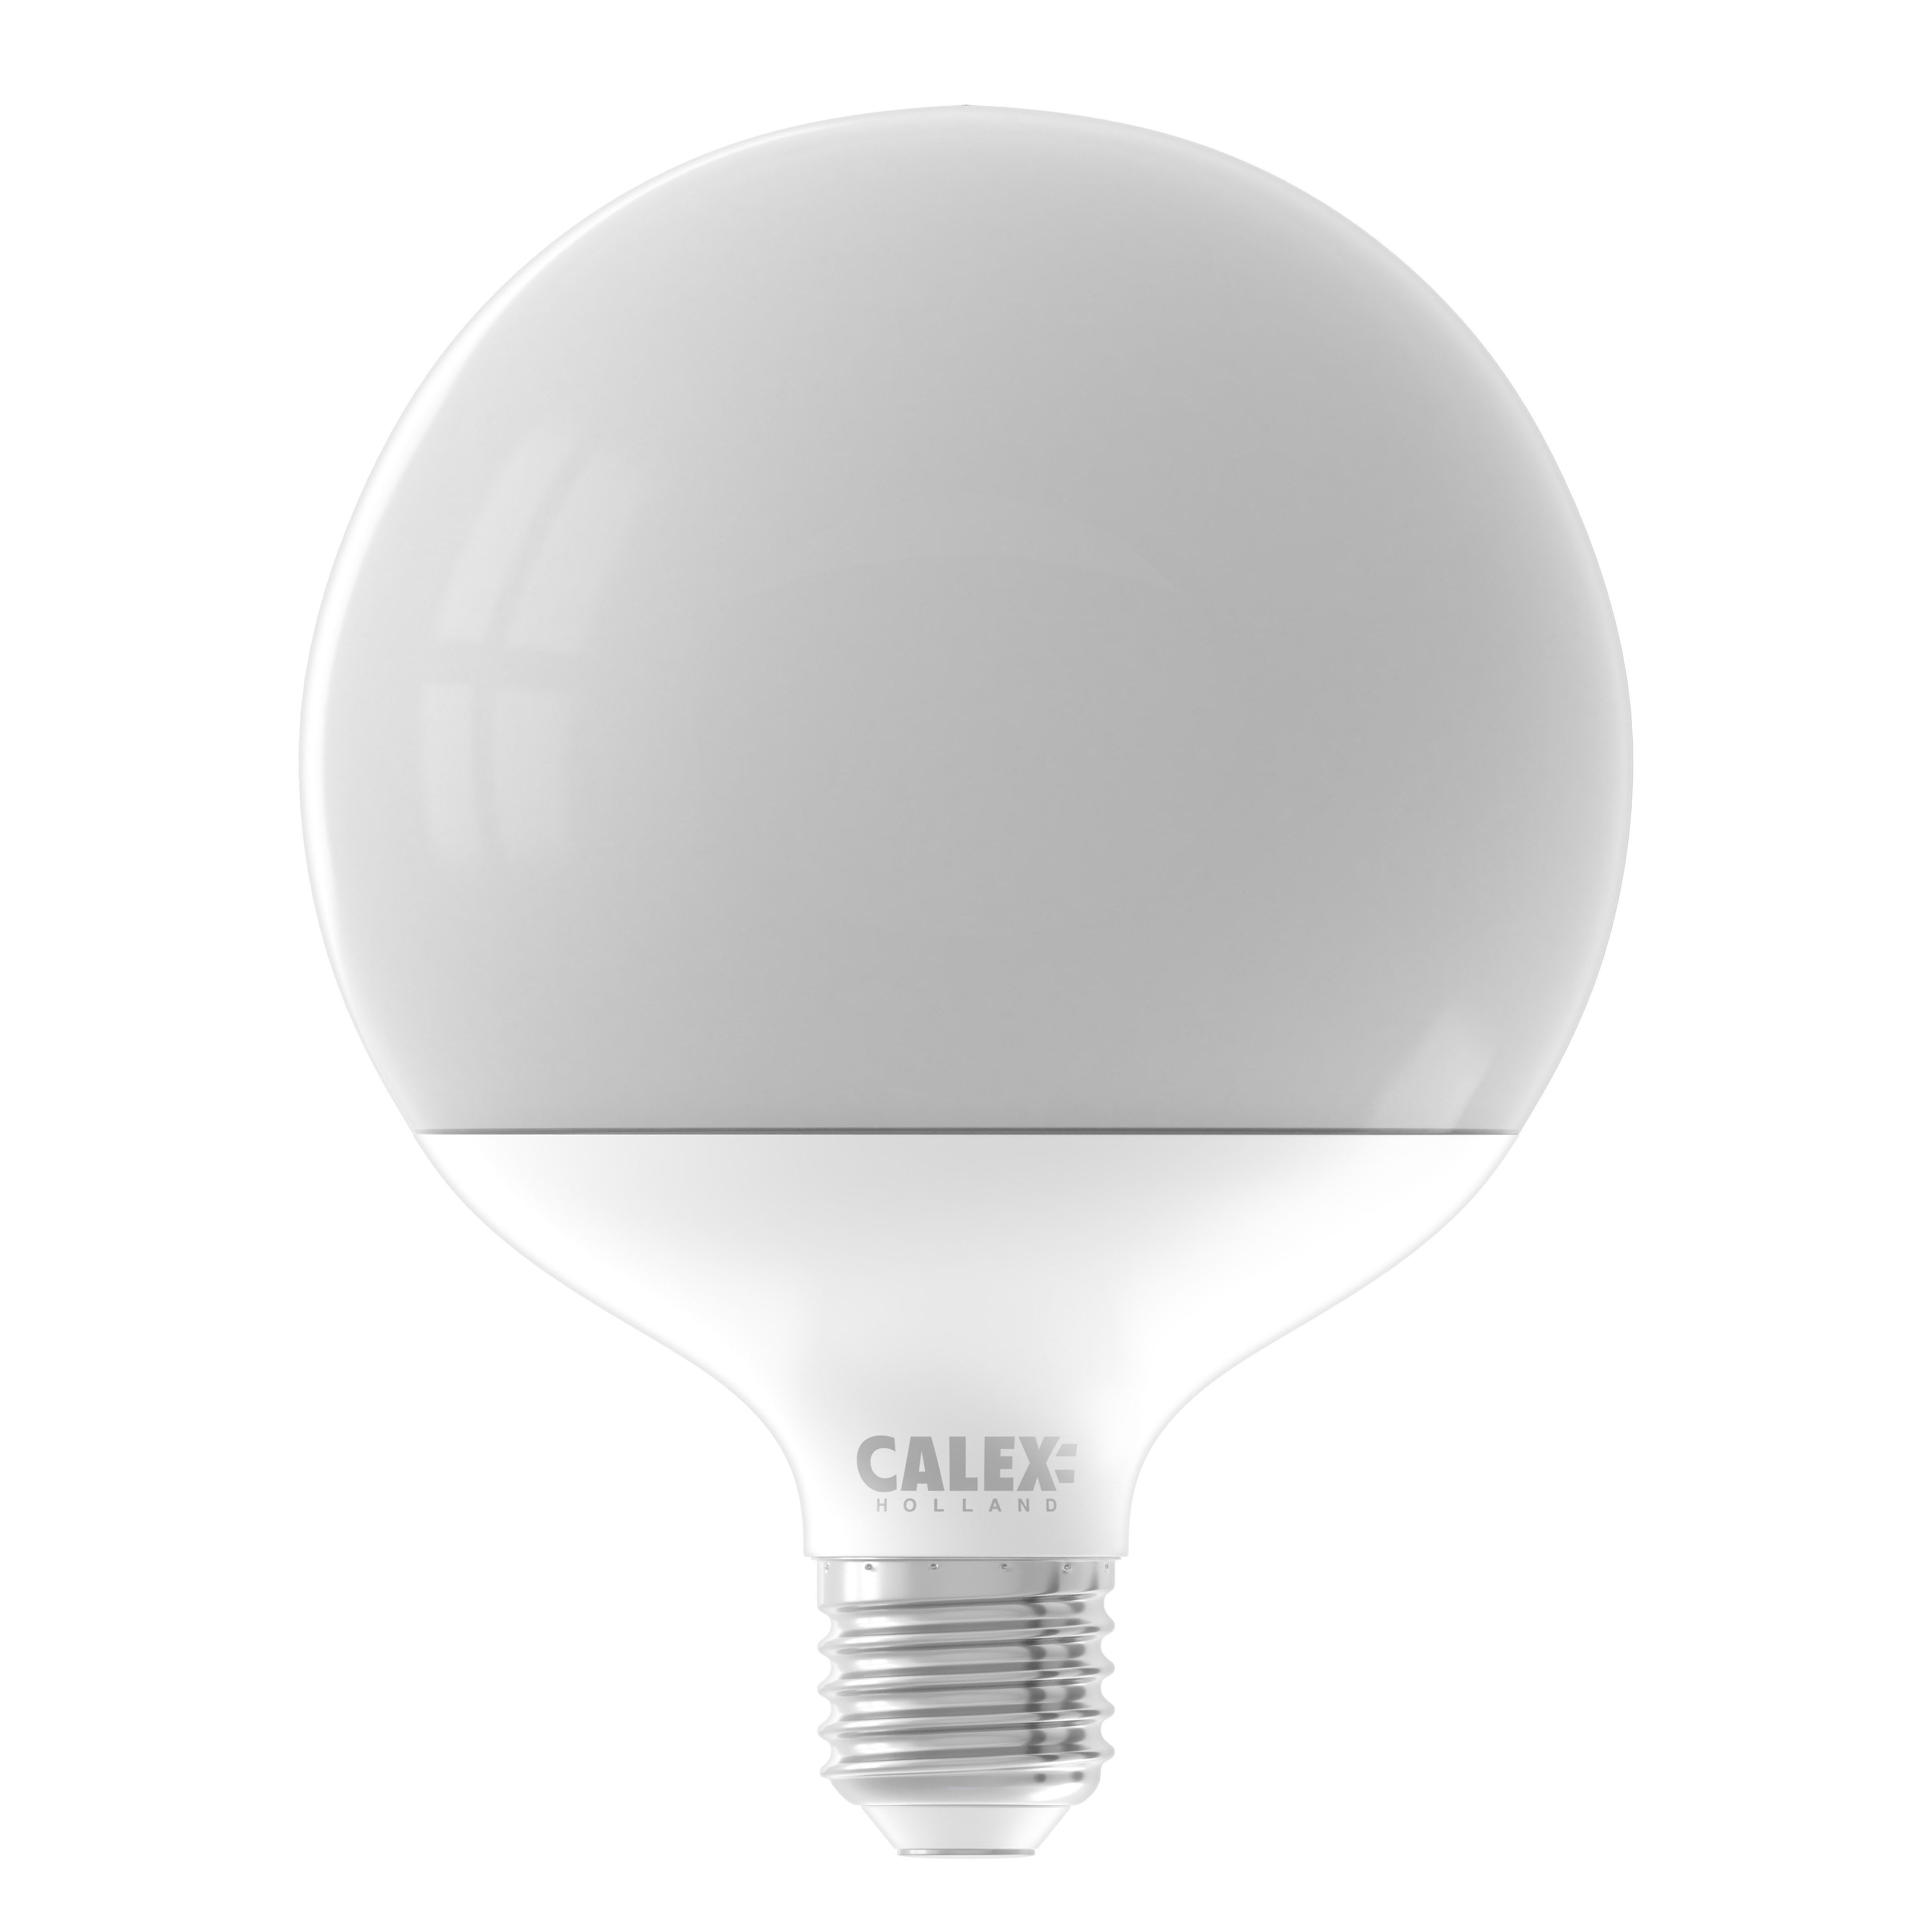 Ampoule LED E27 Porcelaine Idra dimmable